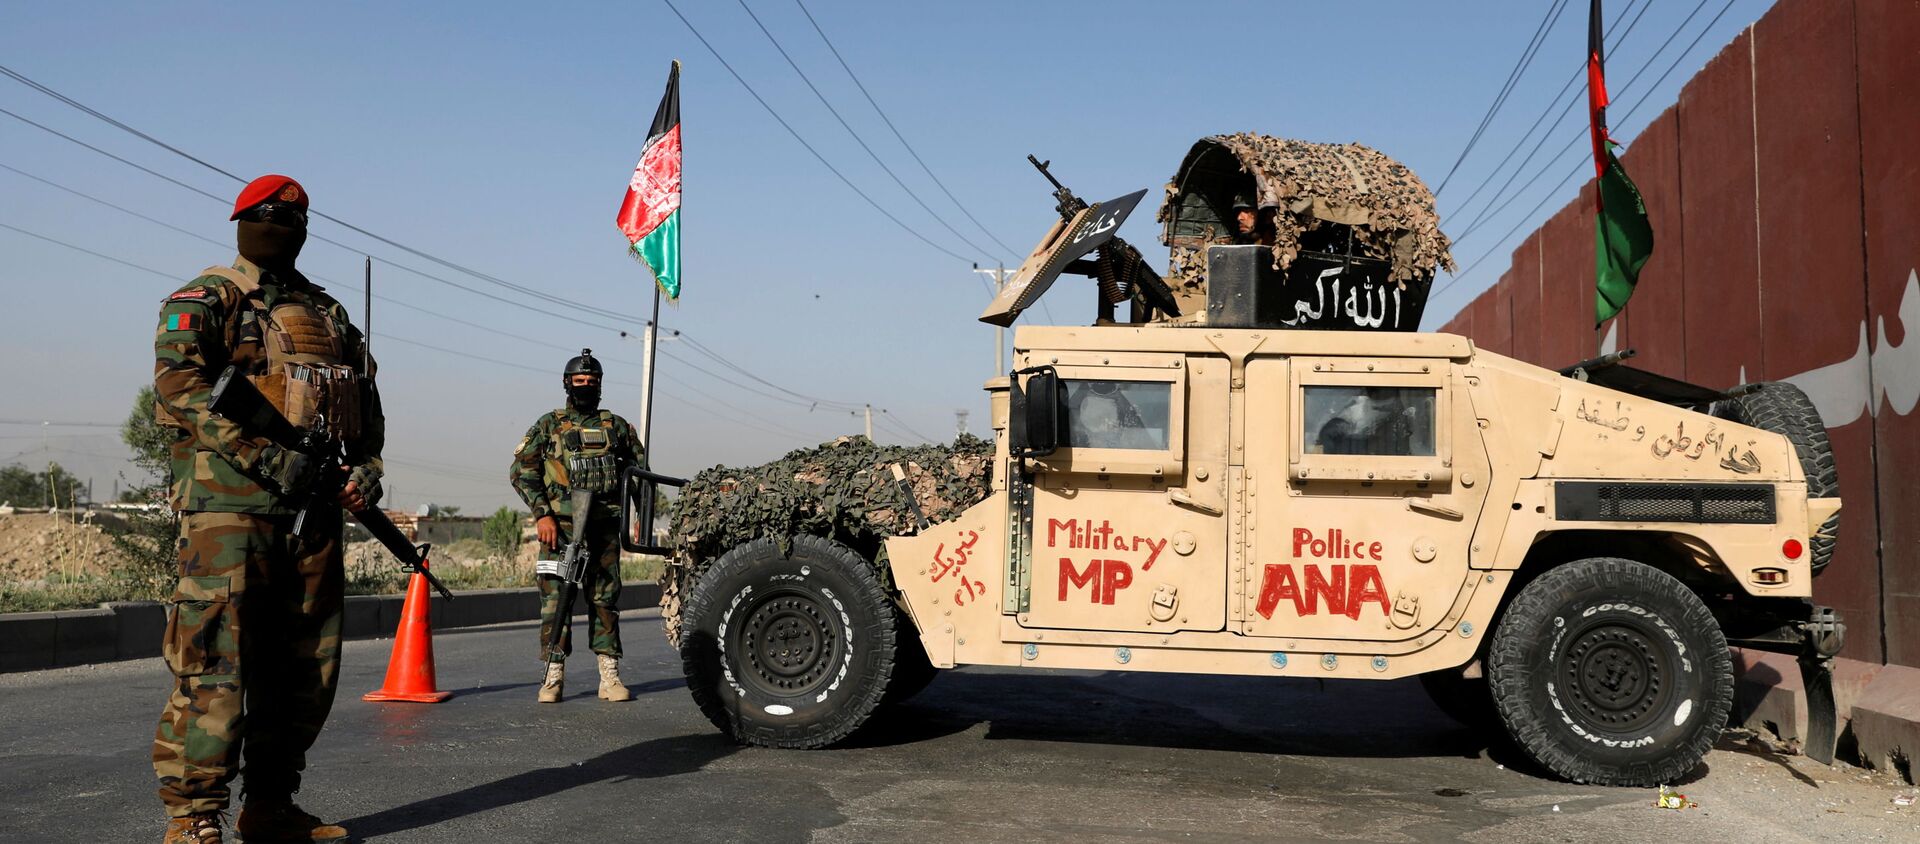 Офицеры Афганской национальной армии несут вахту на контрольно-пропускном пункте в Кабуле, Афганистан, 8 июля 2021 года. - Sputnik Абхазия, 1920, 26.07.2021